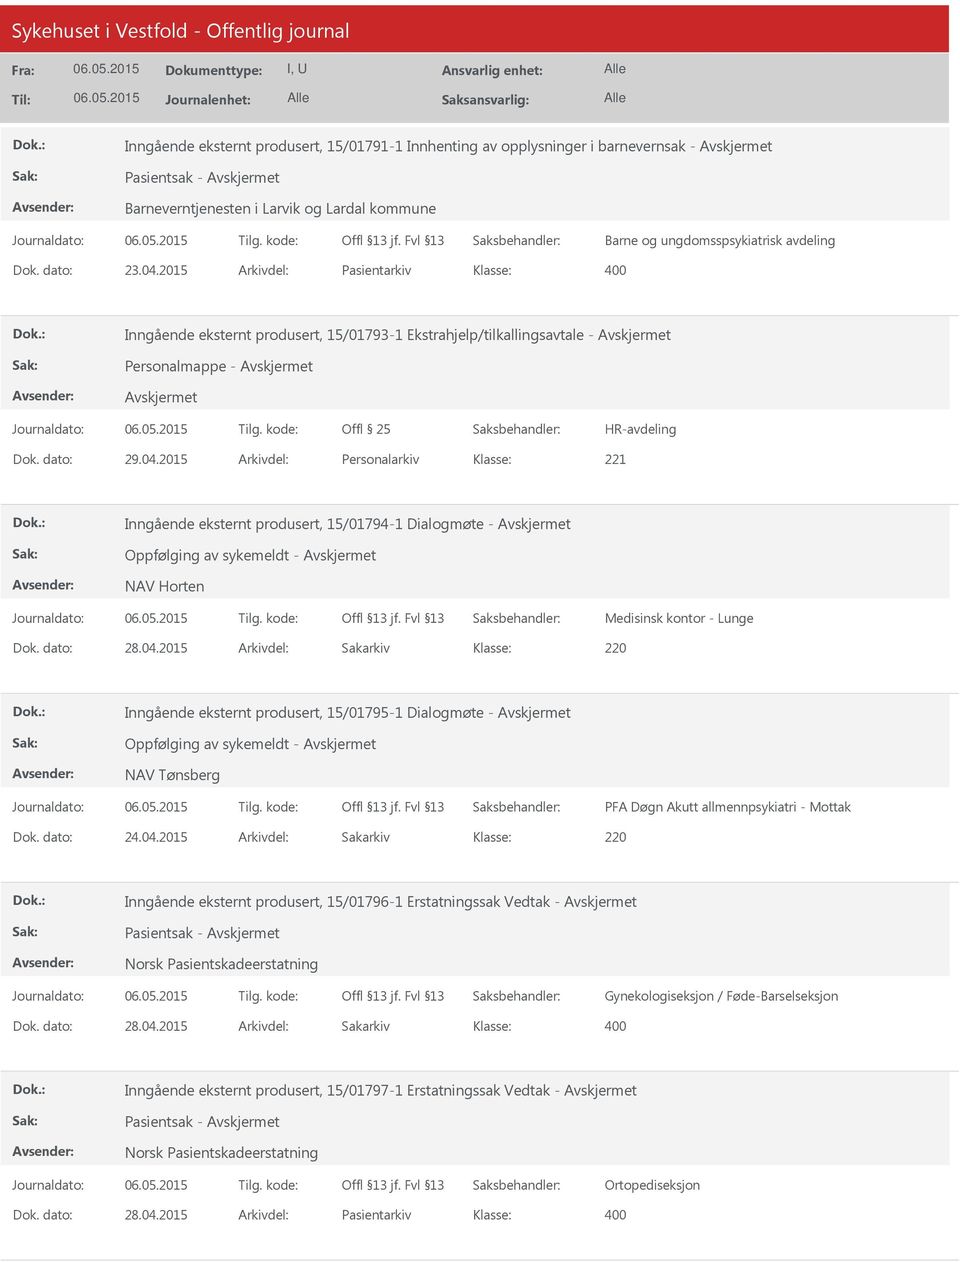 2015 Arkivdel: Personalarkiv Inngående eksternt produsert, 15/01794-1 Dialogmøte - Oppfølging av sykemeldt - NAV Horten Medisinsk kontor - Lunge Dok. dato: 28.04.